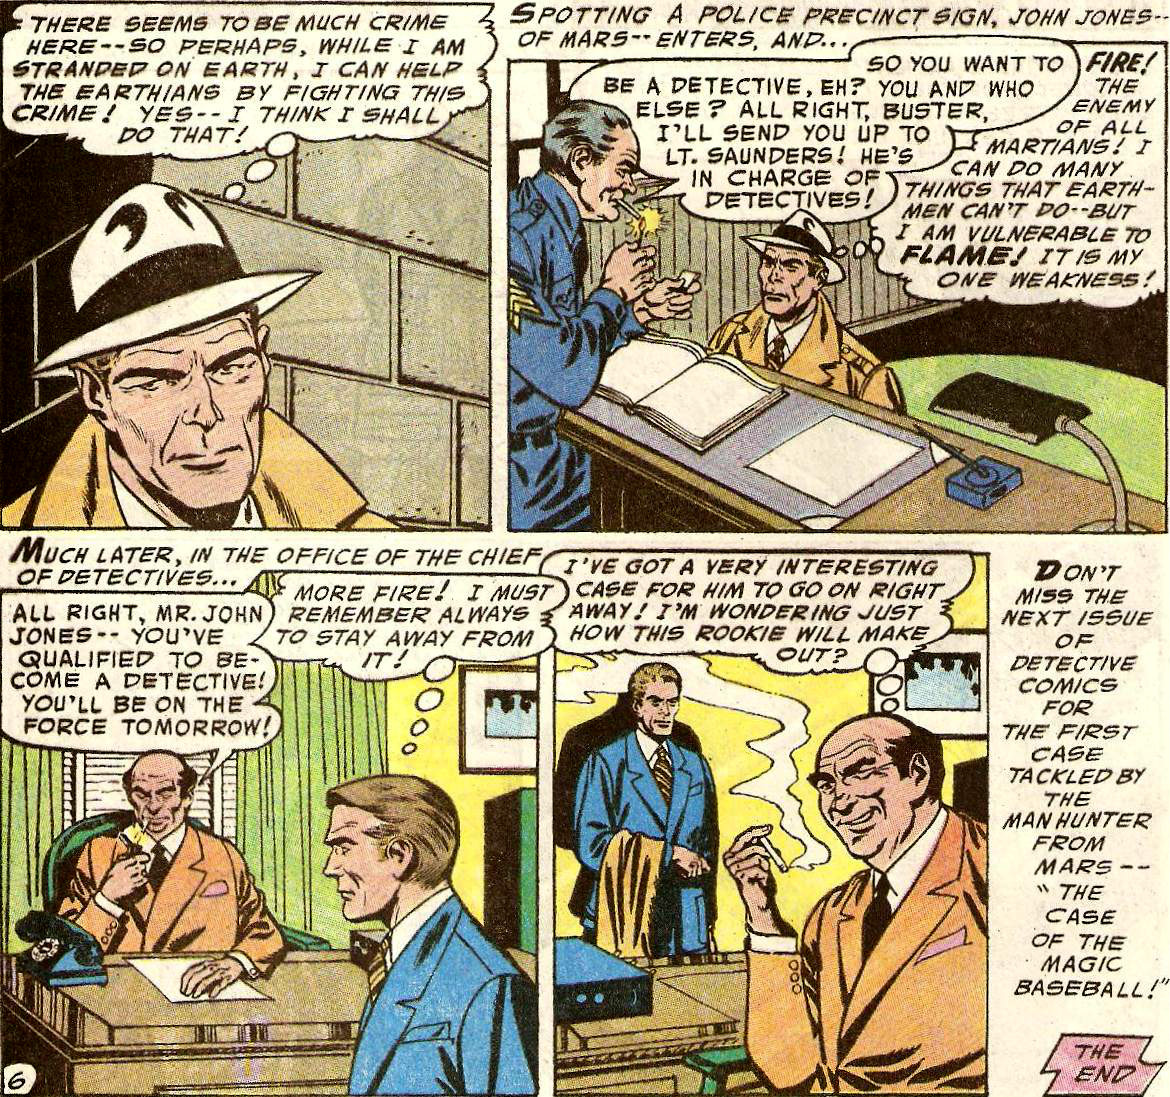 From Detective Comics (Vol. 1) #225 (1955)